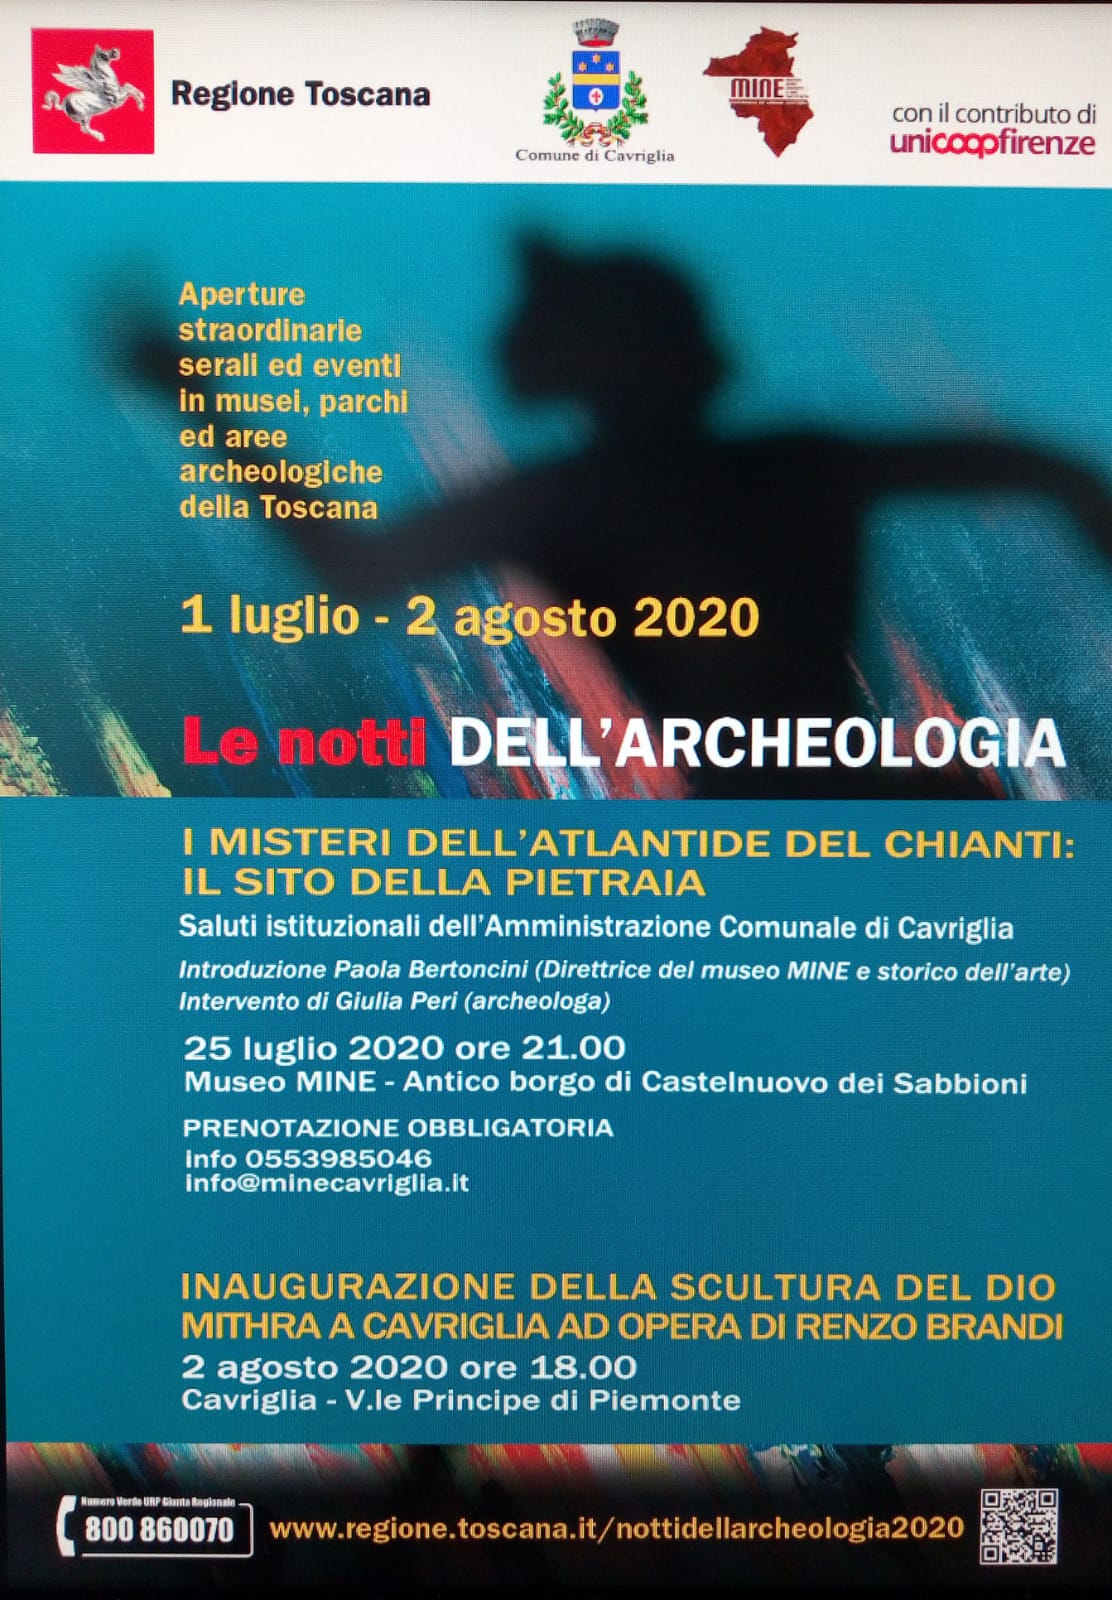 “I misteri dell’Atlantide del Chianti”, primo appuntamento con “Le notti dell’Archeologia” 2020 a Cavriglia